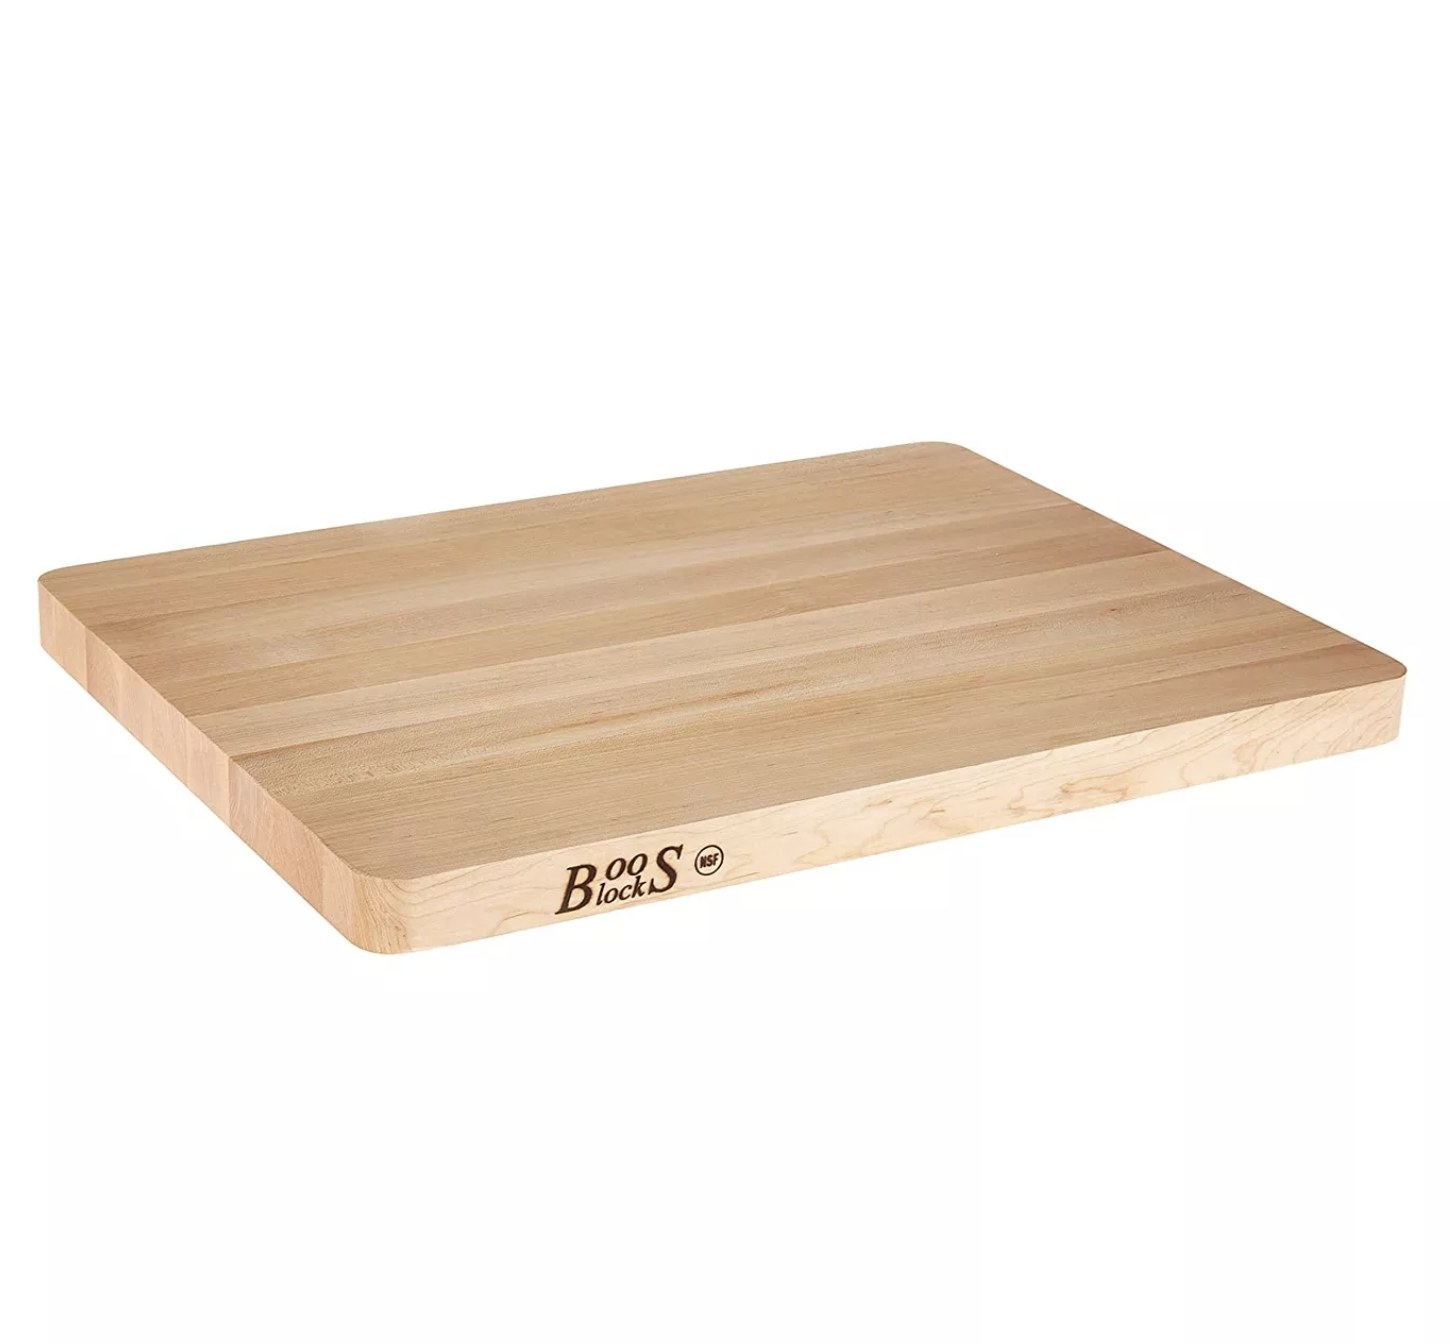 A maple wood cutting board